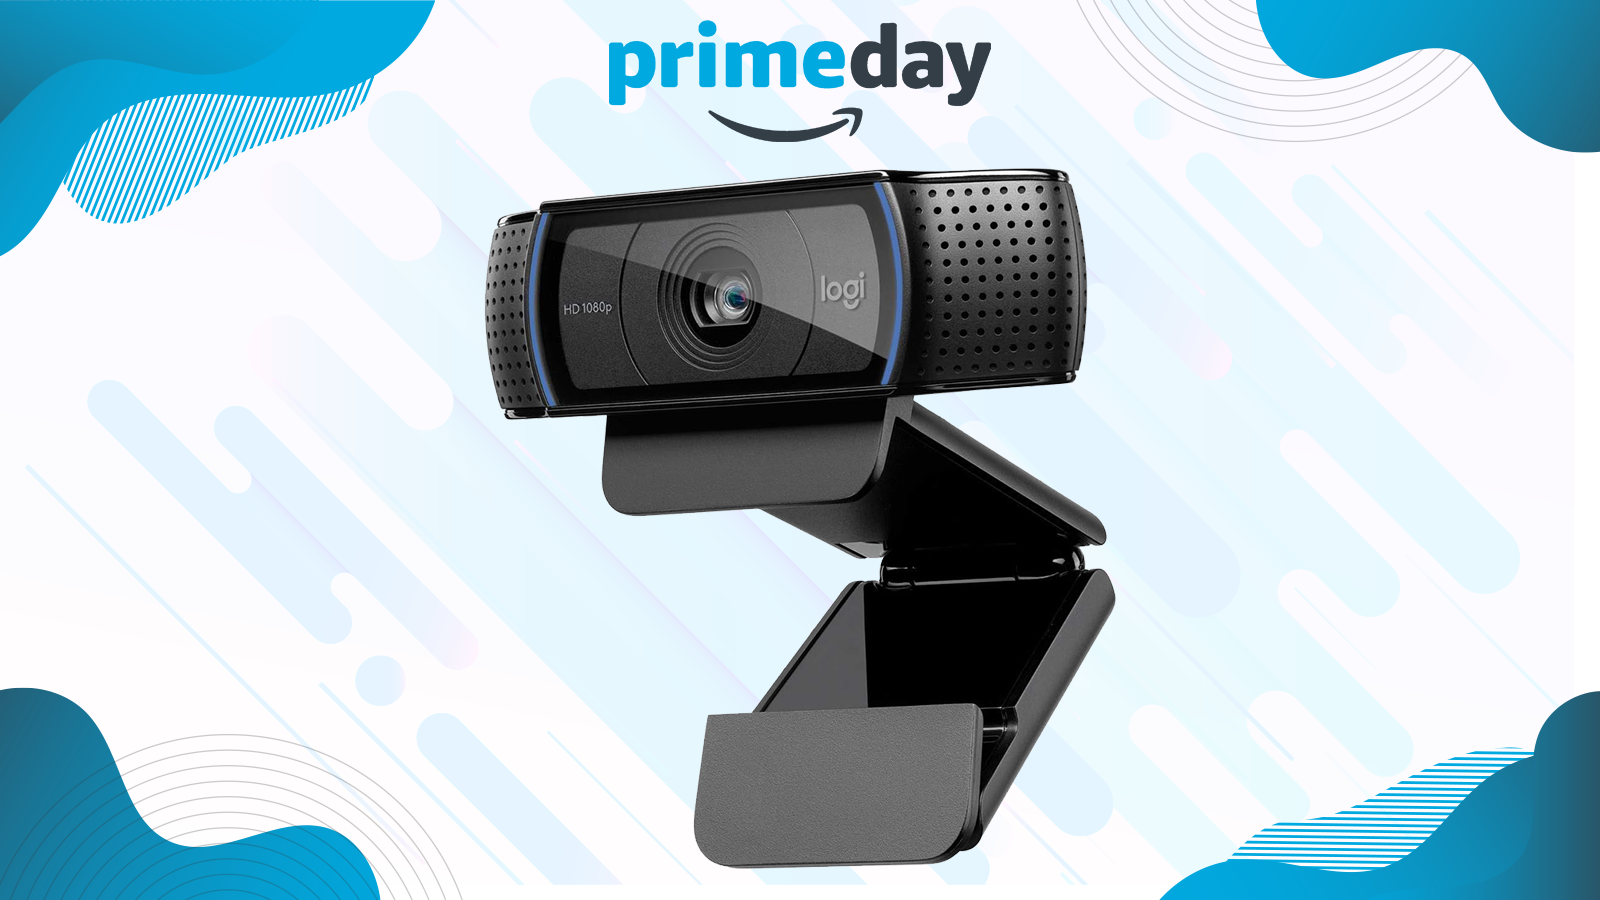 Le prix de la webcam Logitech C920 s'effondre pour Prime Day